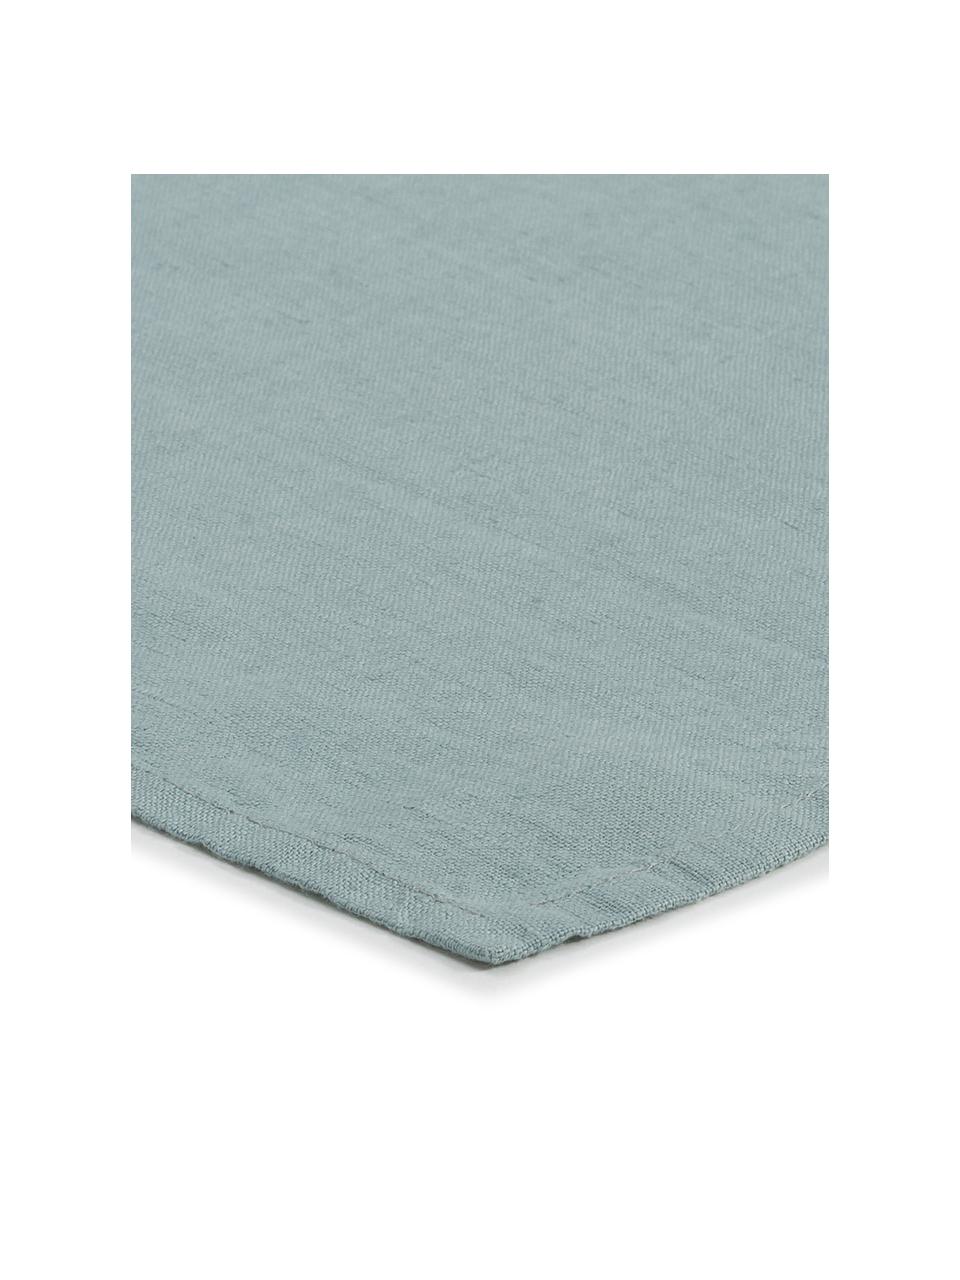 Serviettes de table pur lin Sunshine, 4 pièces, Bleu-vert clair